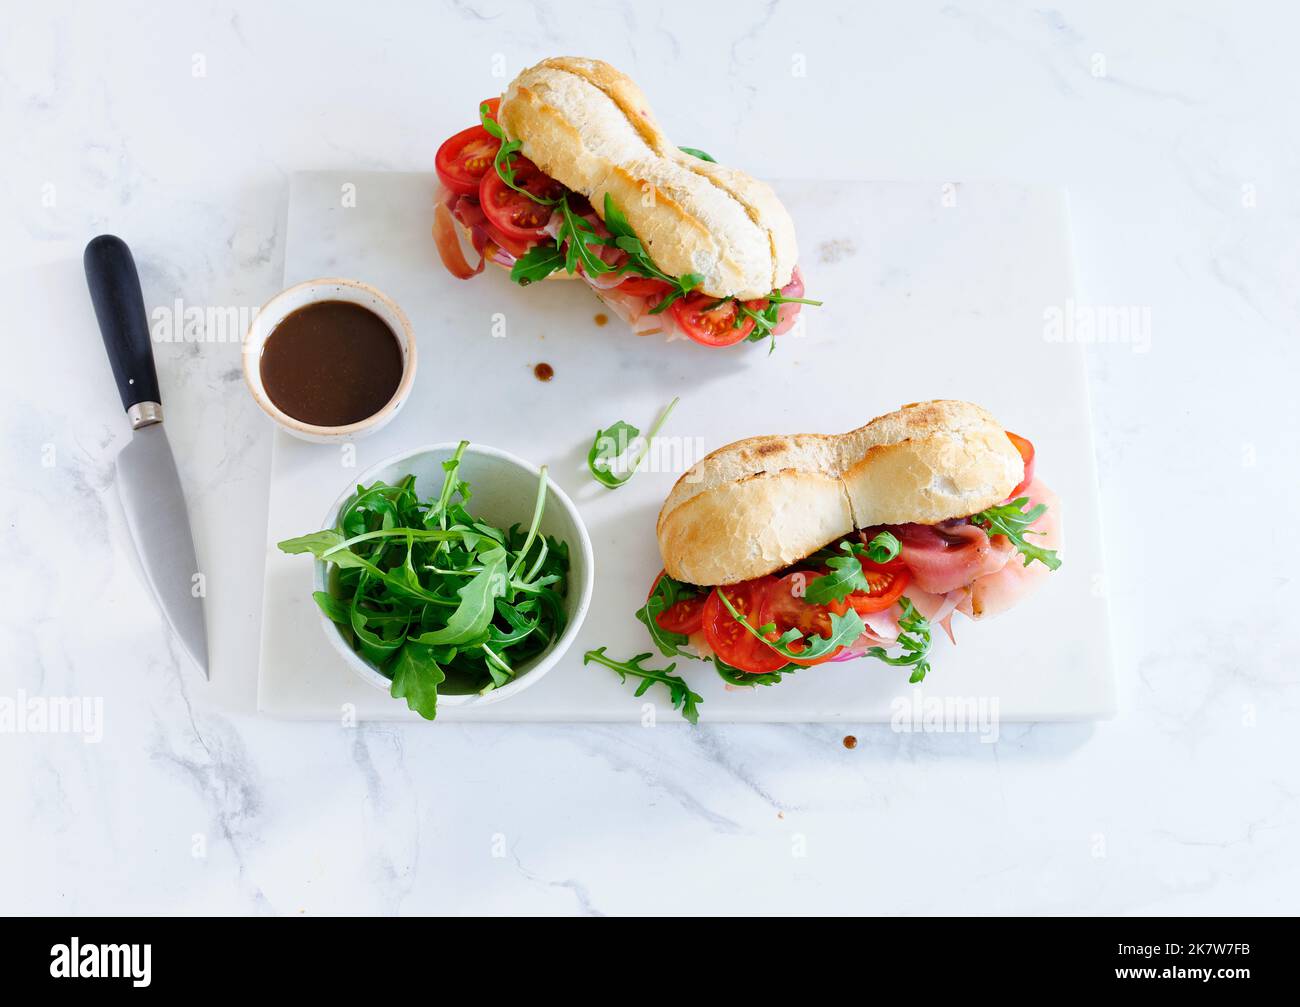 Plat avec de savoureux sandwiches au jambon, mozarella et légumes frais. Concept déjeuner simple Banque D'Images